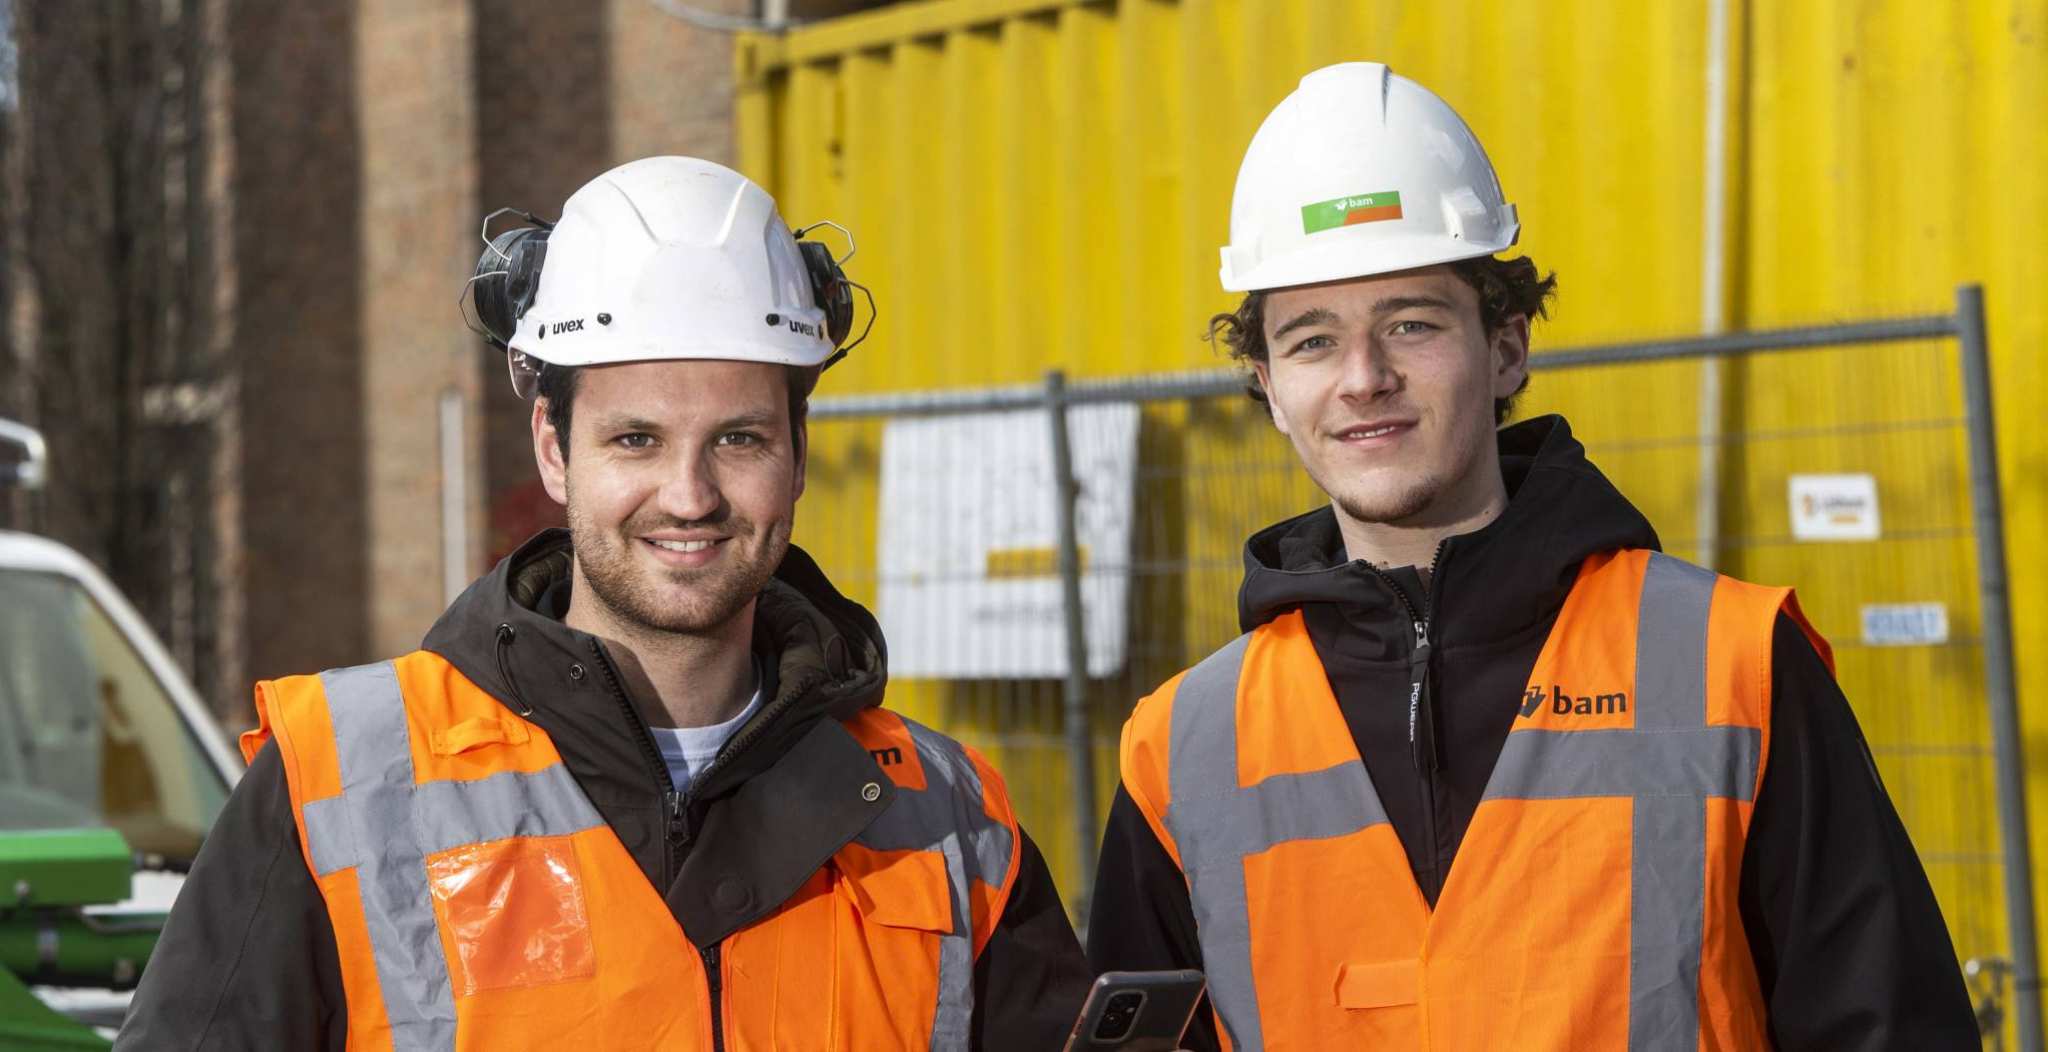 Afstudeerders Civiele Techniek Bart Terhorst en Youri de Beijer op een bouwplaats